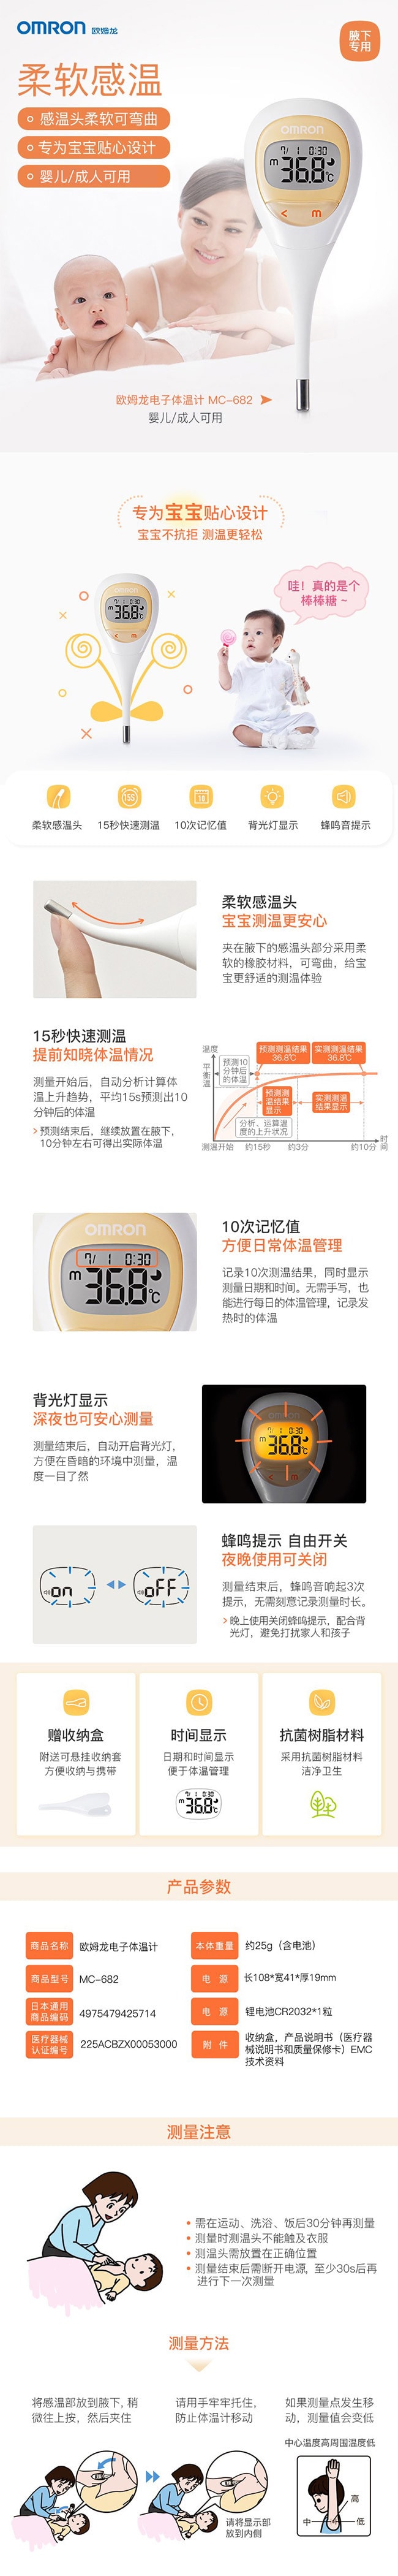 【日本直效郵件】OMRON歐姆龍 電子體溫計 嬰幼兒成人腋下體溫計 醫用溫度計 MC-682